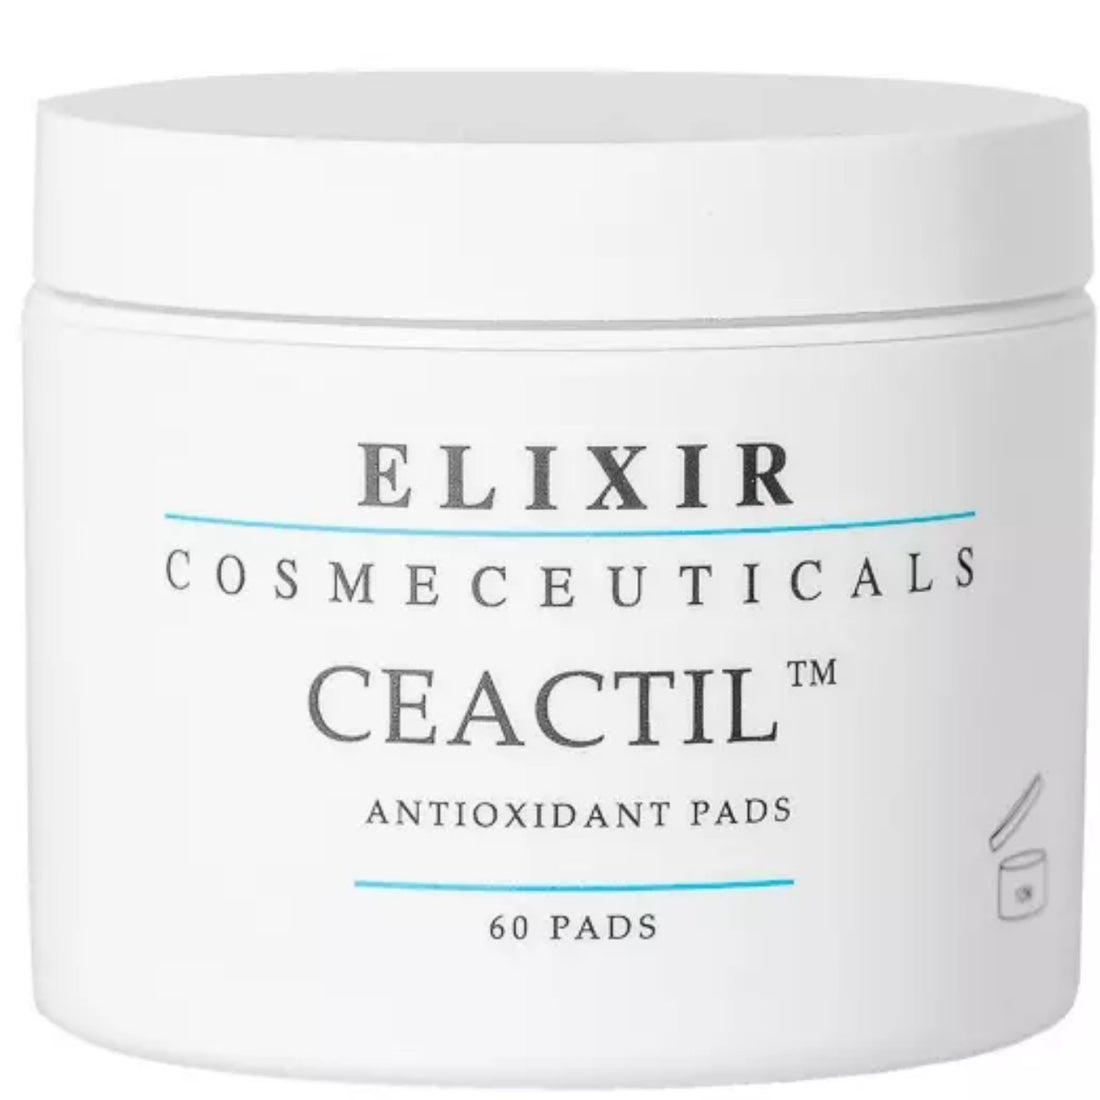 Elixir Ceactil Antioxidant Pads